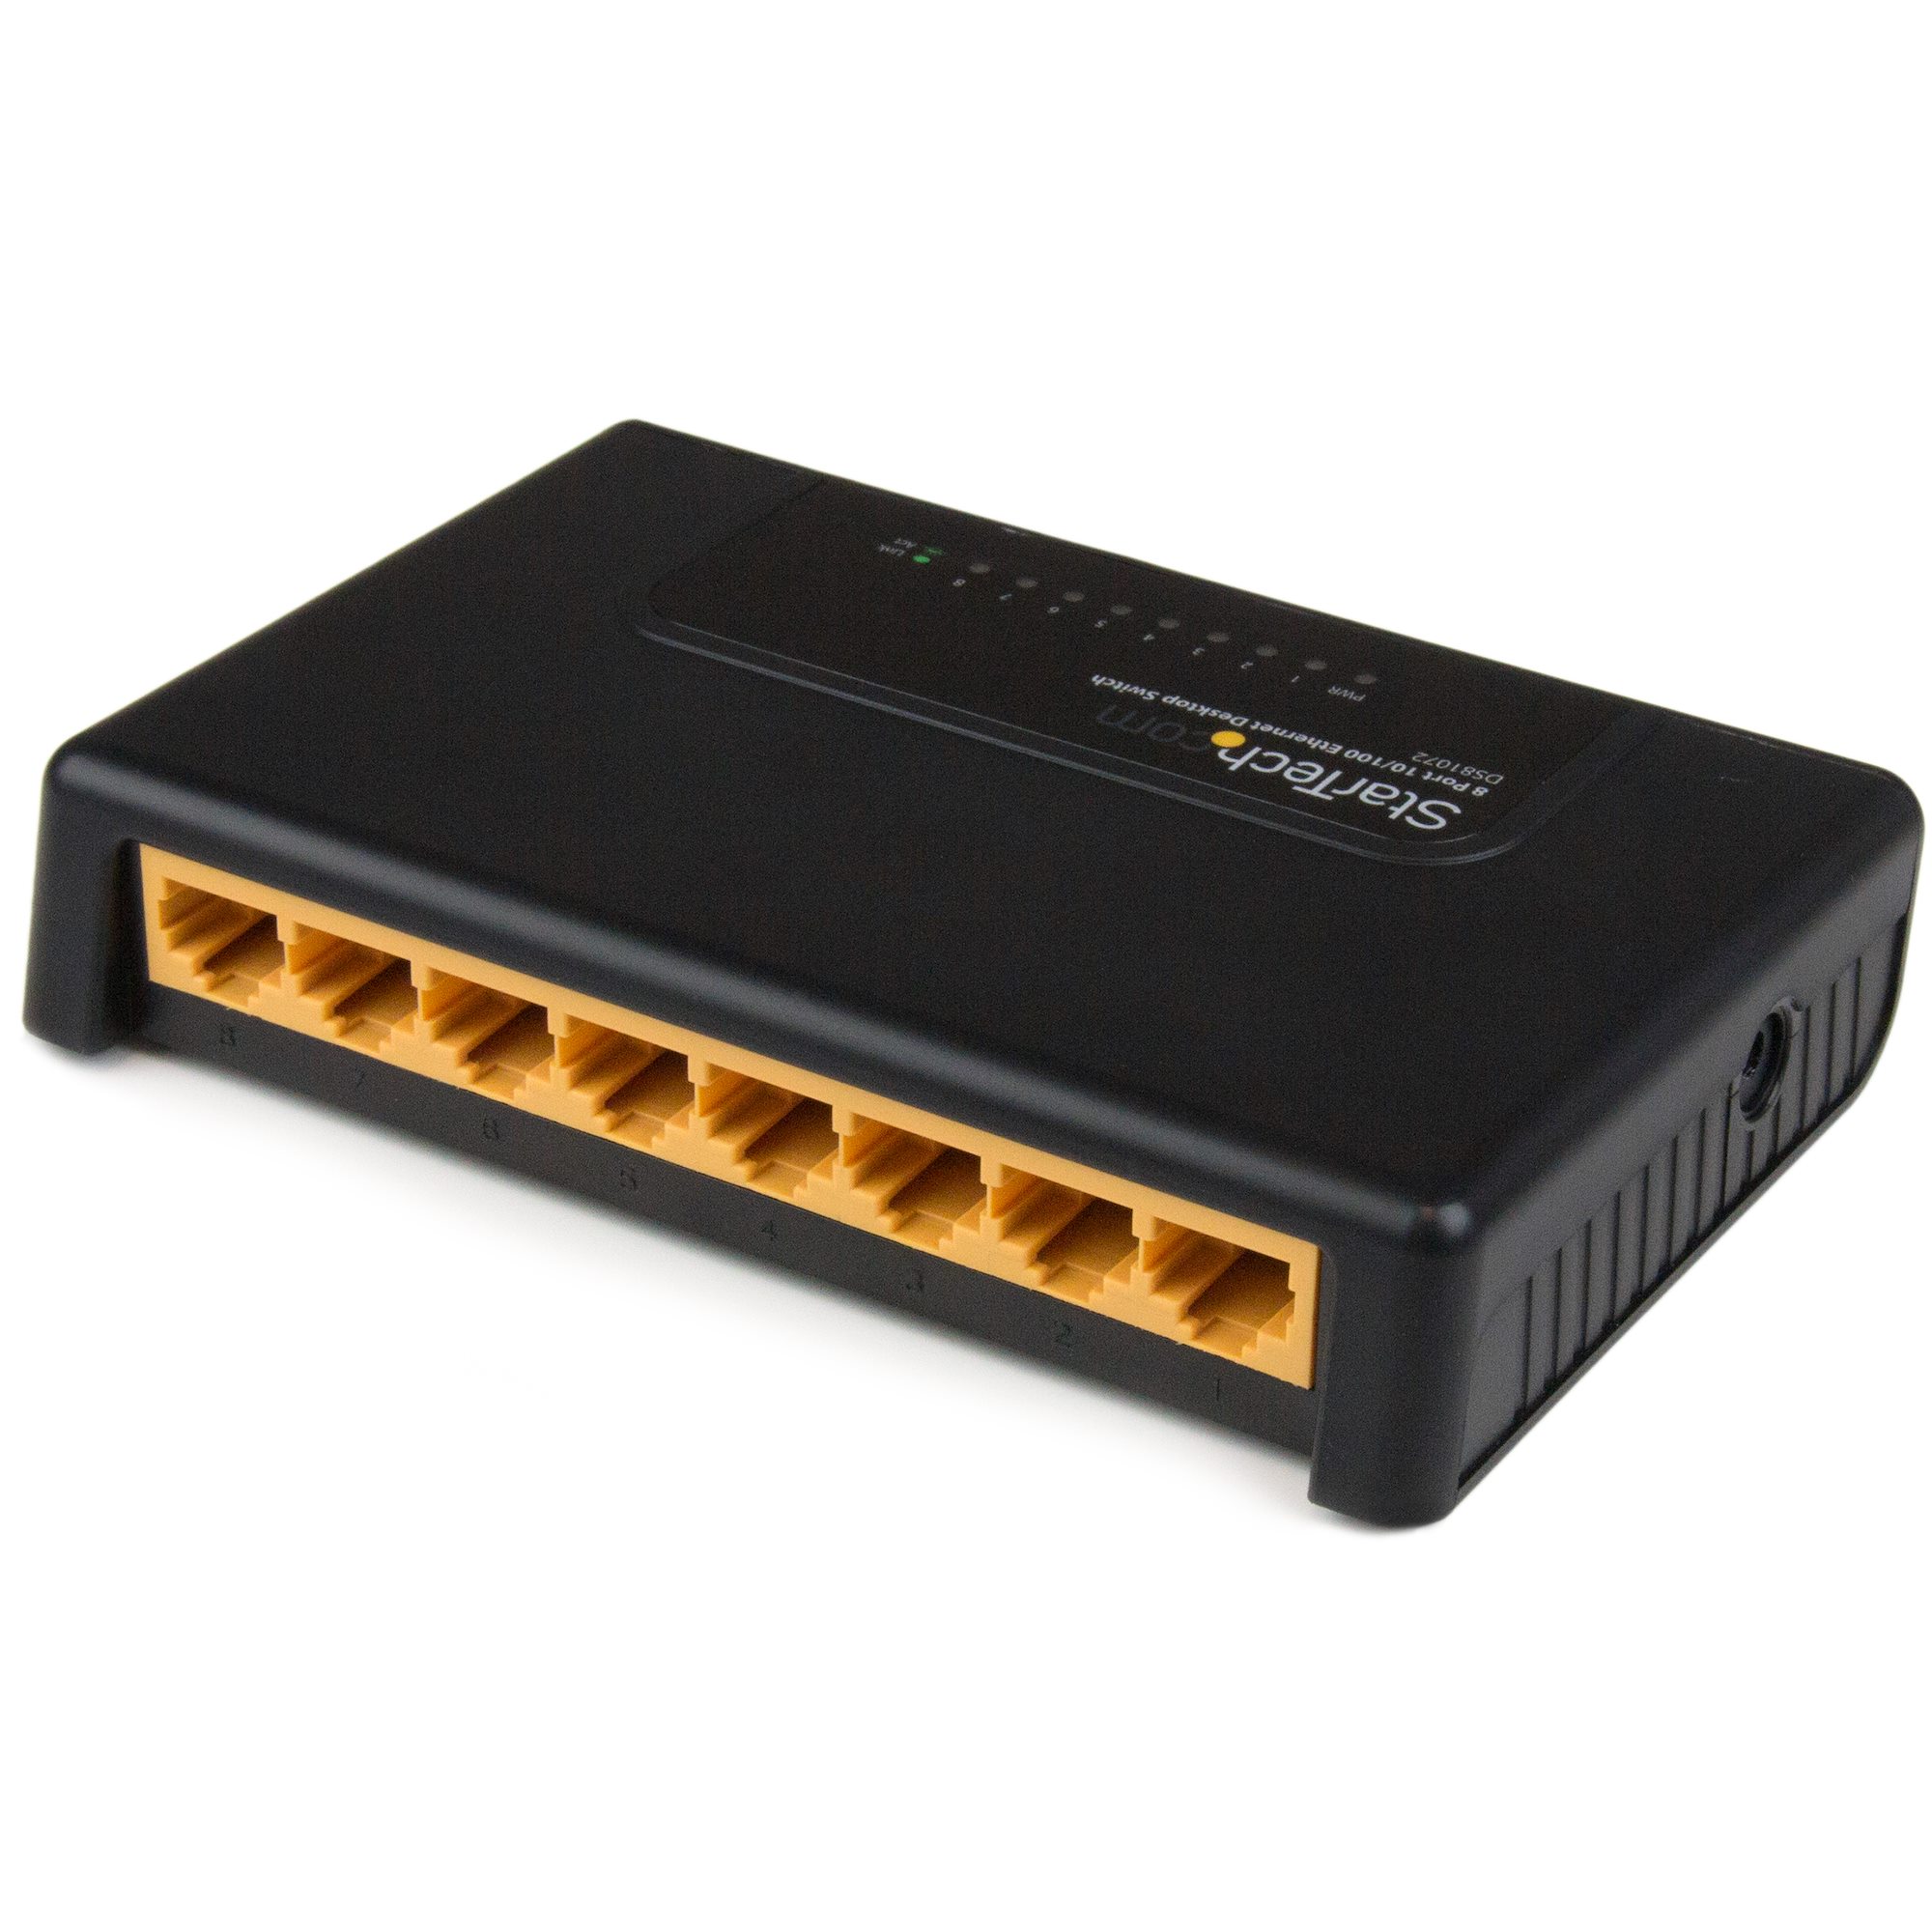 8-Port 10/100Mbps Desktop Network Switch